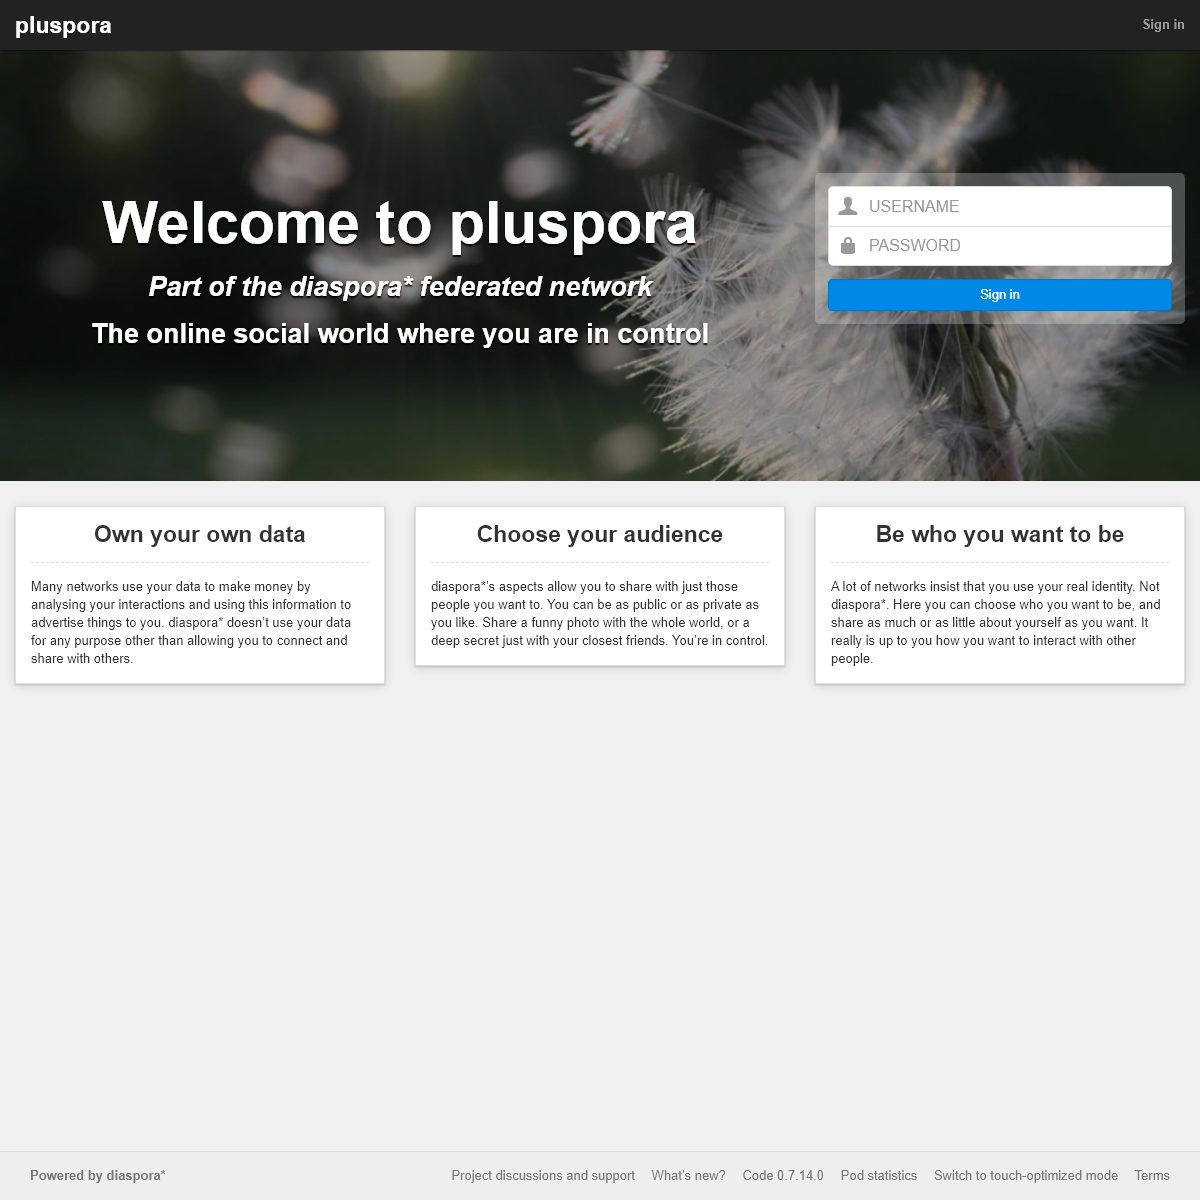 A complete backup of pluspora.com